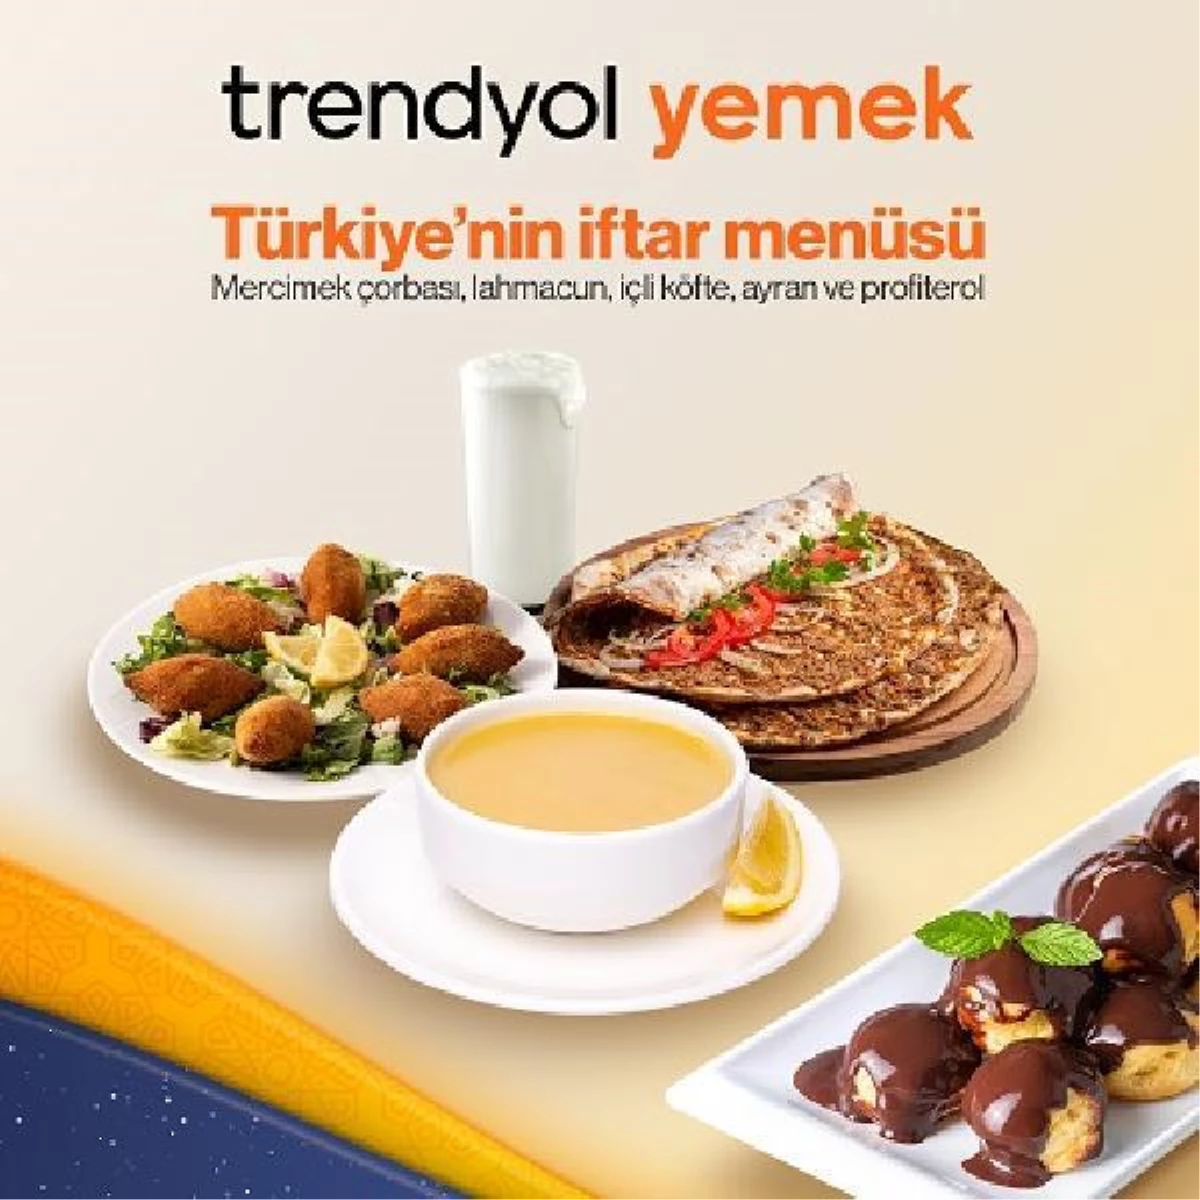 Trendyol Yemek, ramazan ayı trendlerini açıkladı